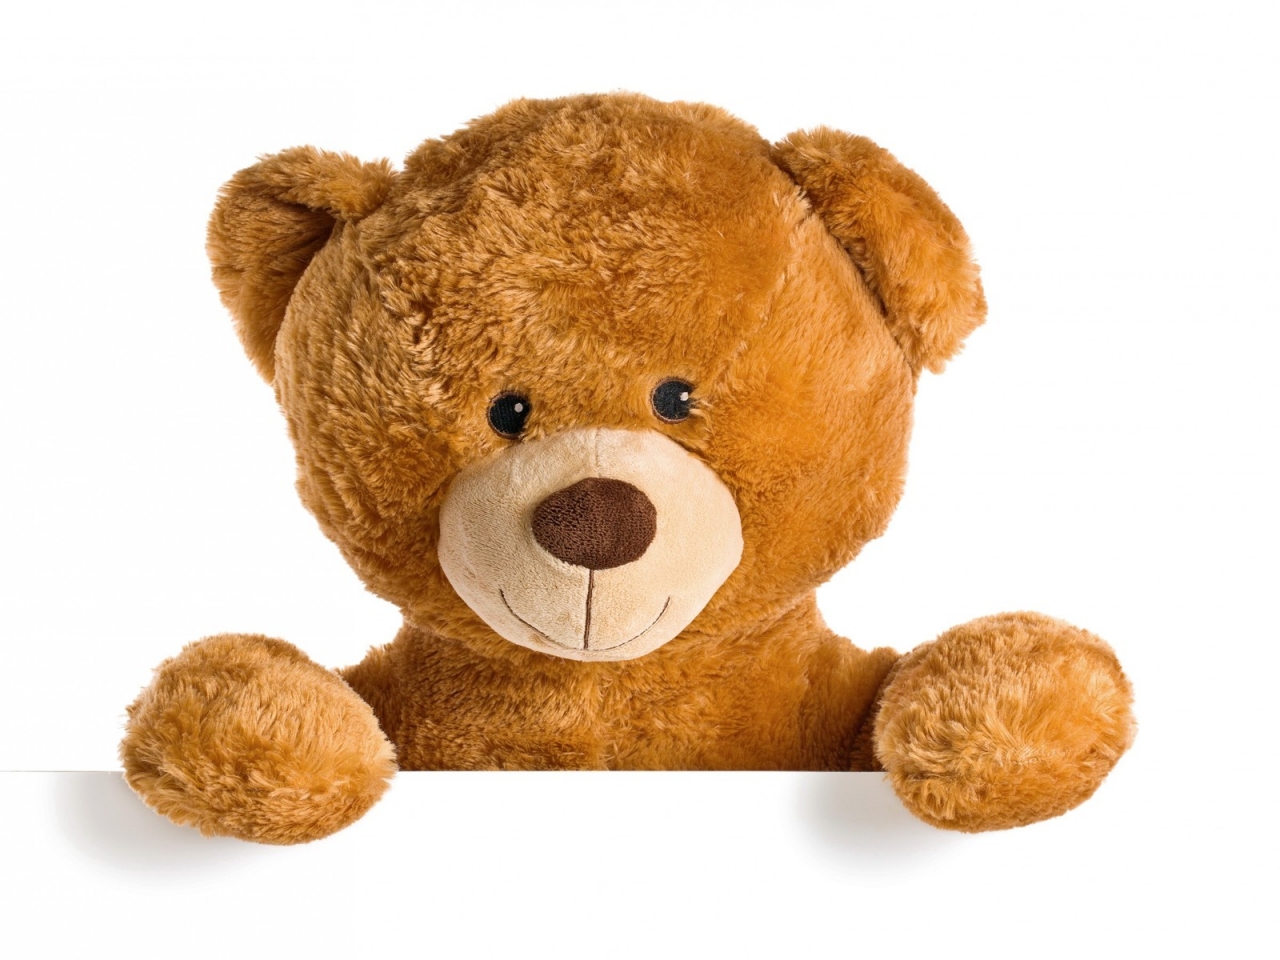 Cute Teddy Bear for 1280 x 960 resolution